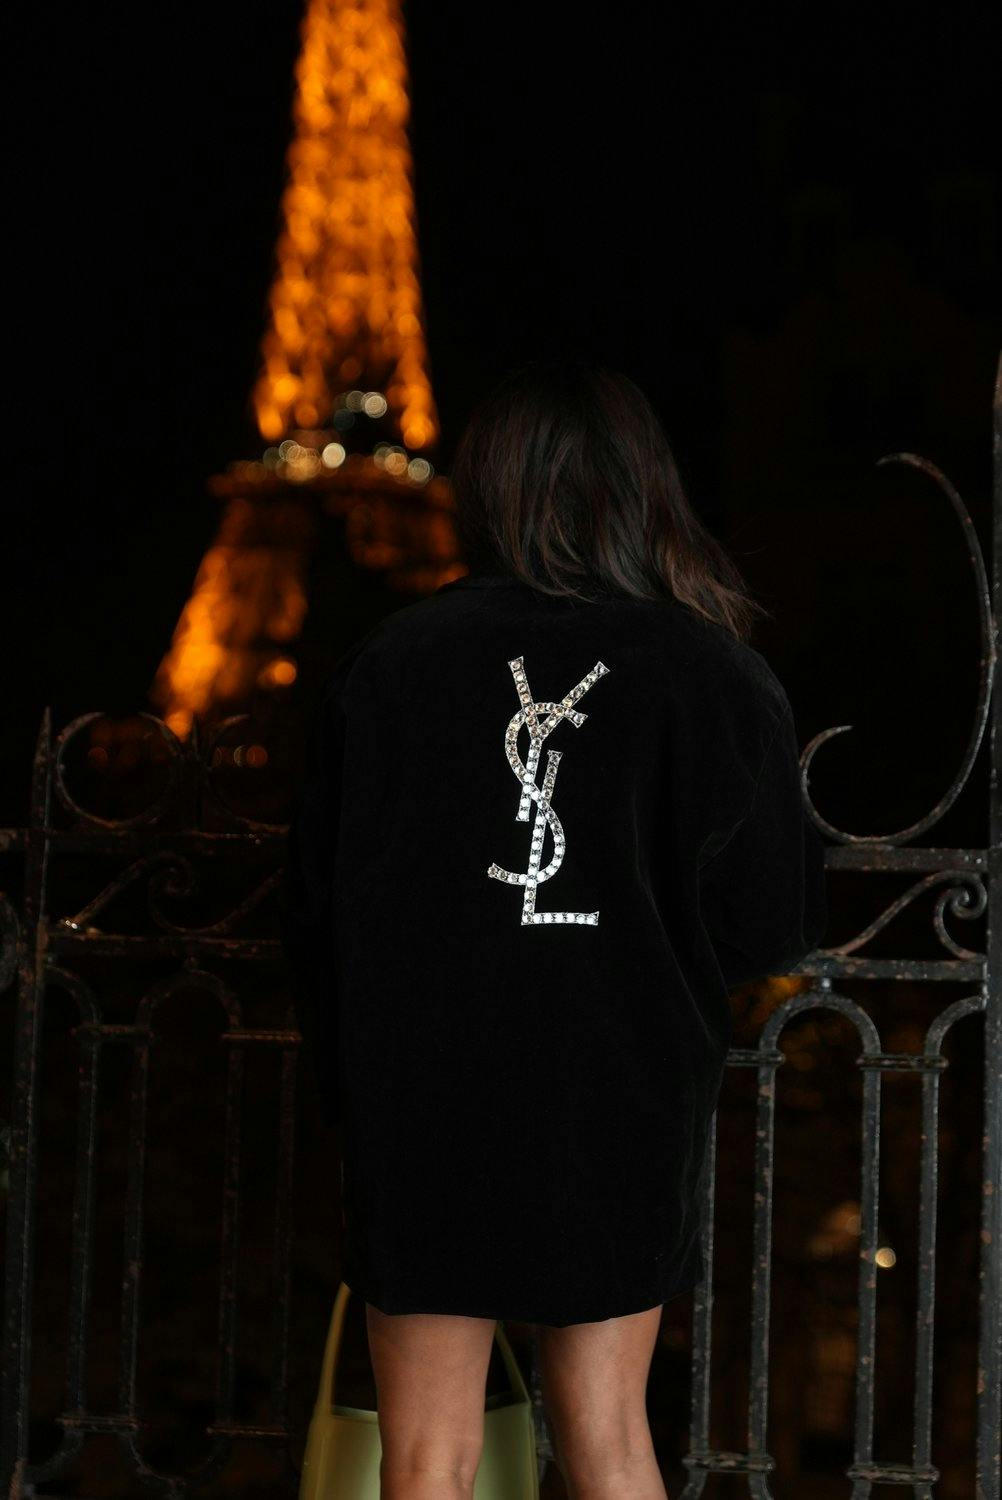 Sachini wearing YSL Jacket in Paris at night